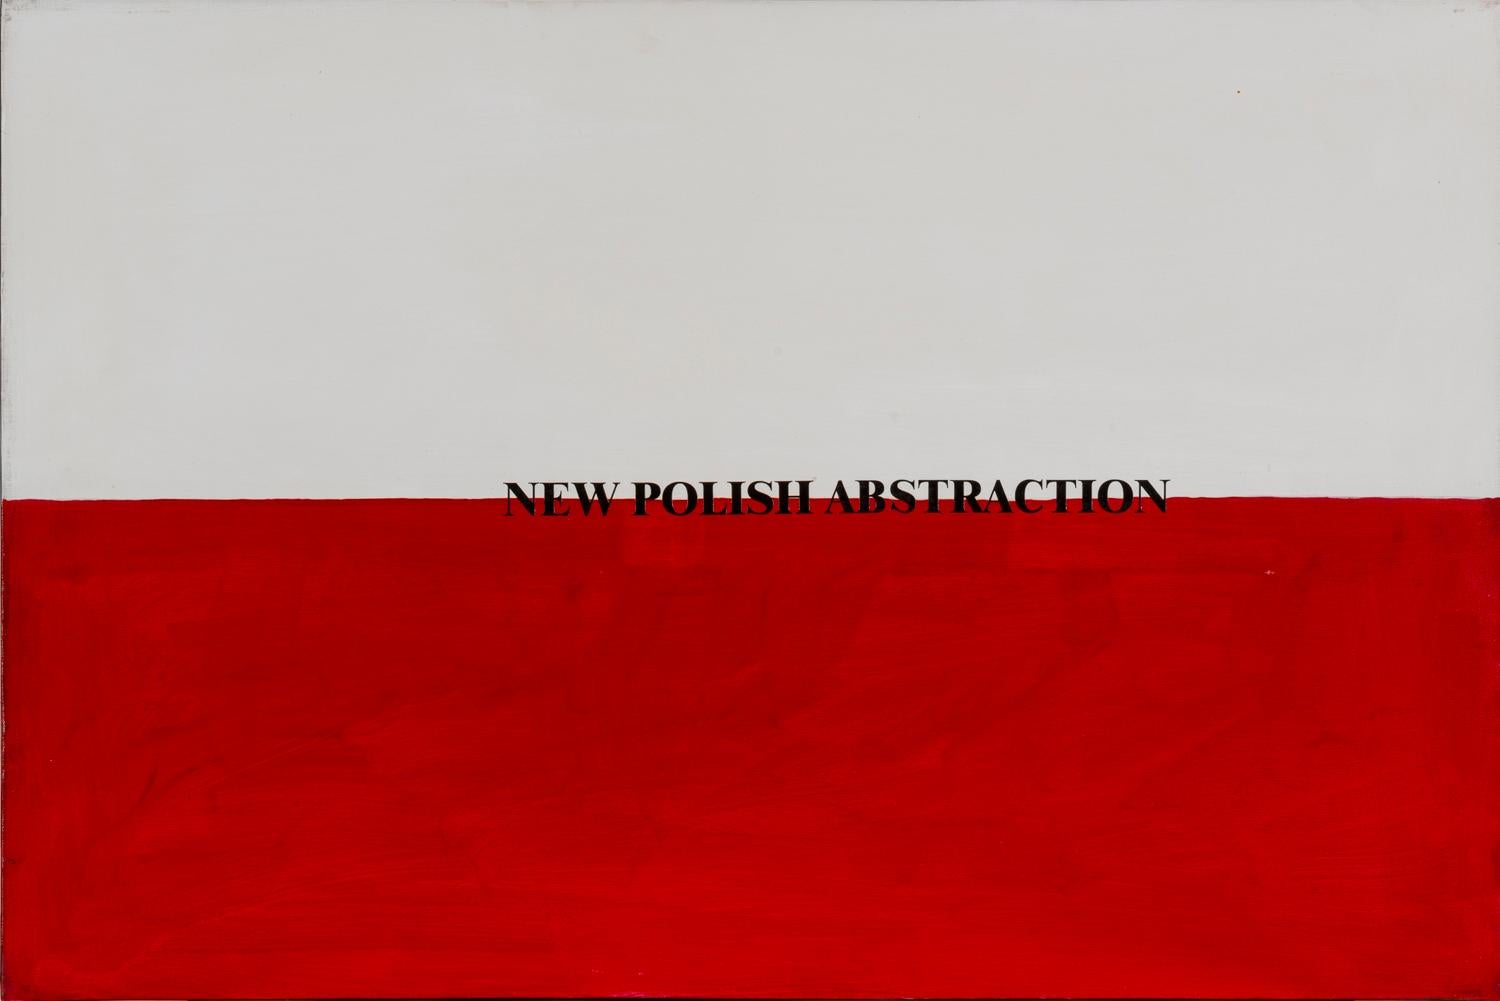 Neue polnische Abstraktion, 1972-2002, Acryl auf Leinwand, Flaggen, Visuelle Poesie